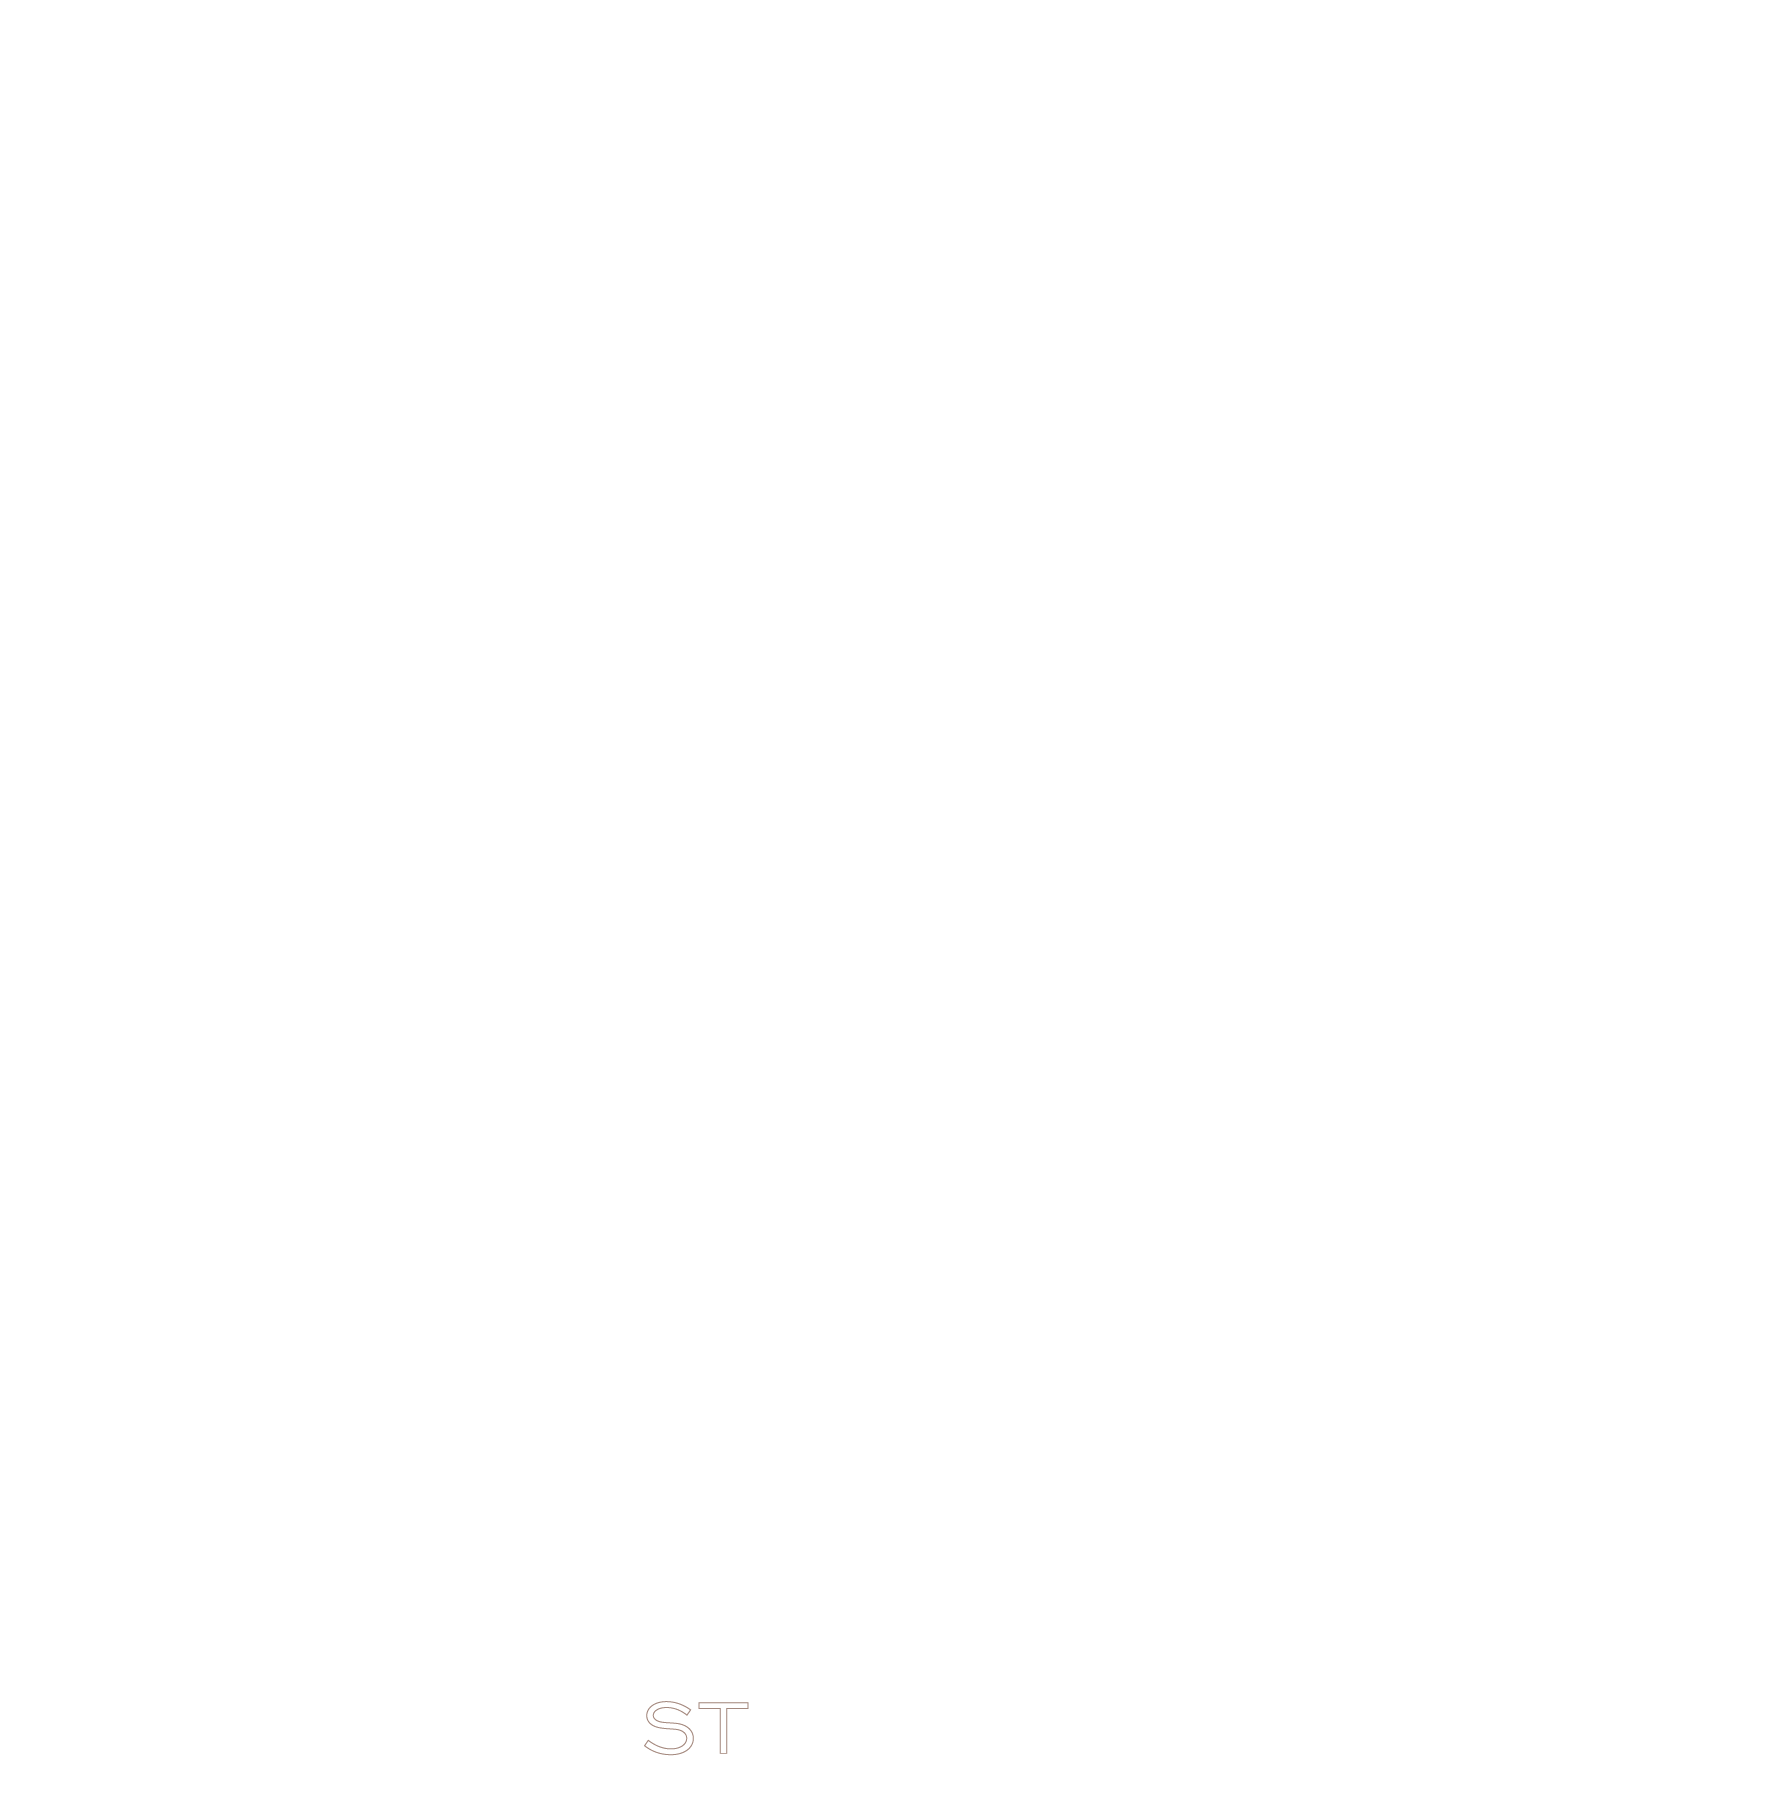 YCYW logo